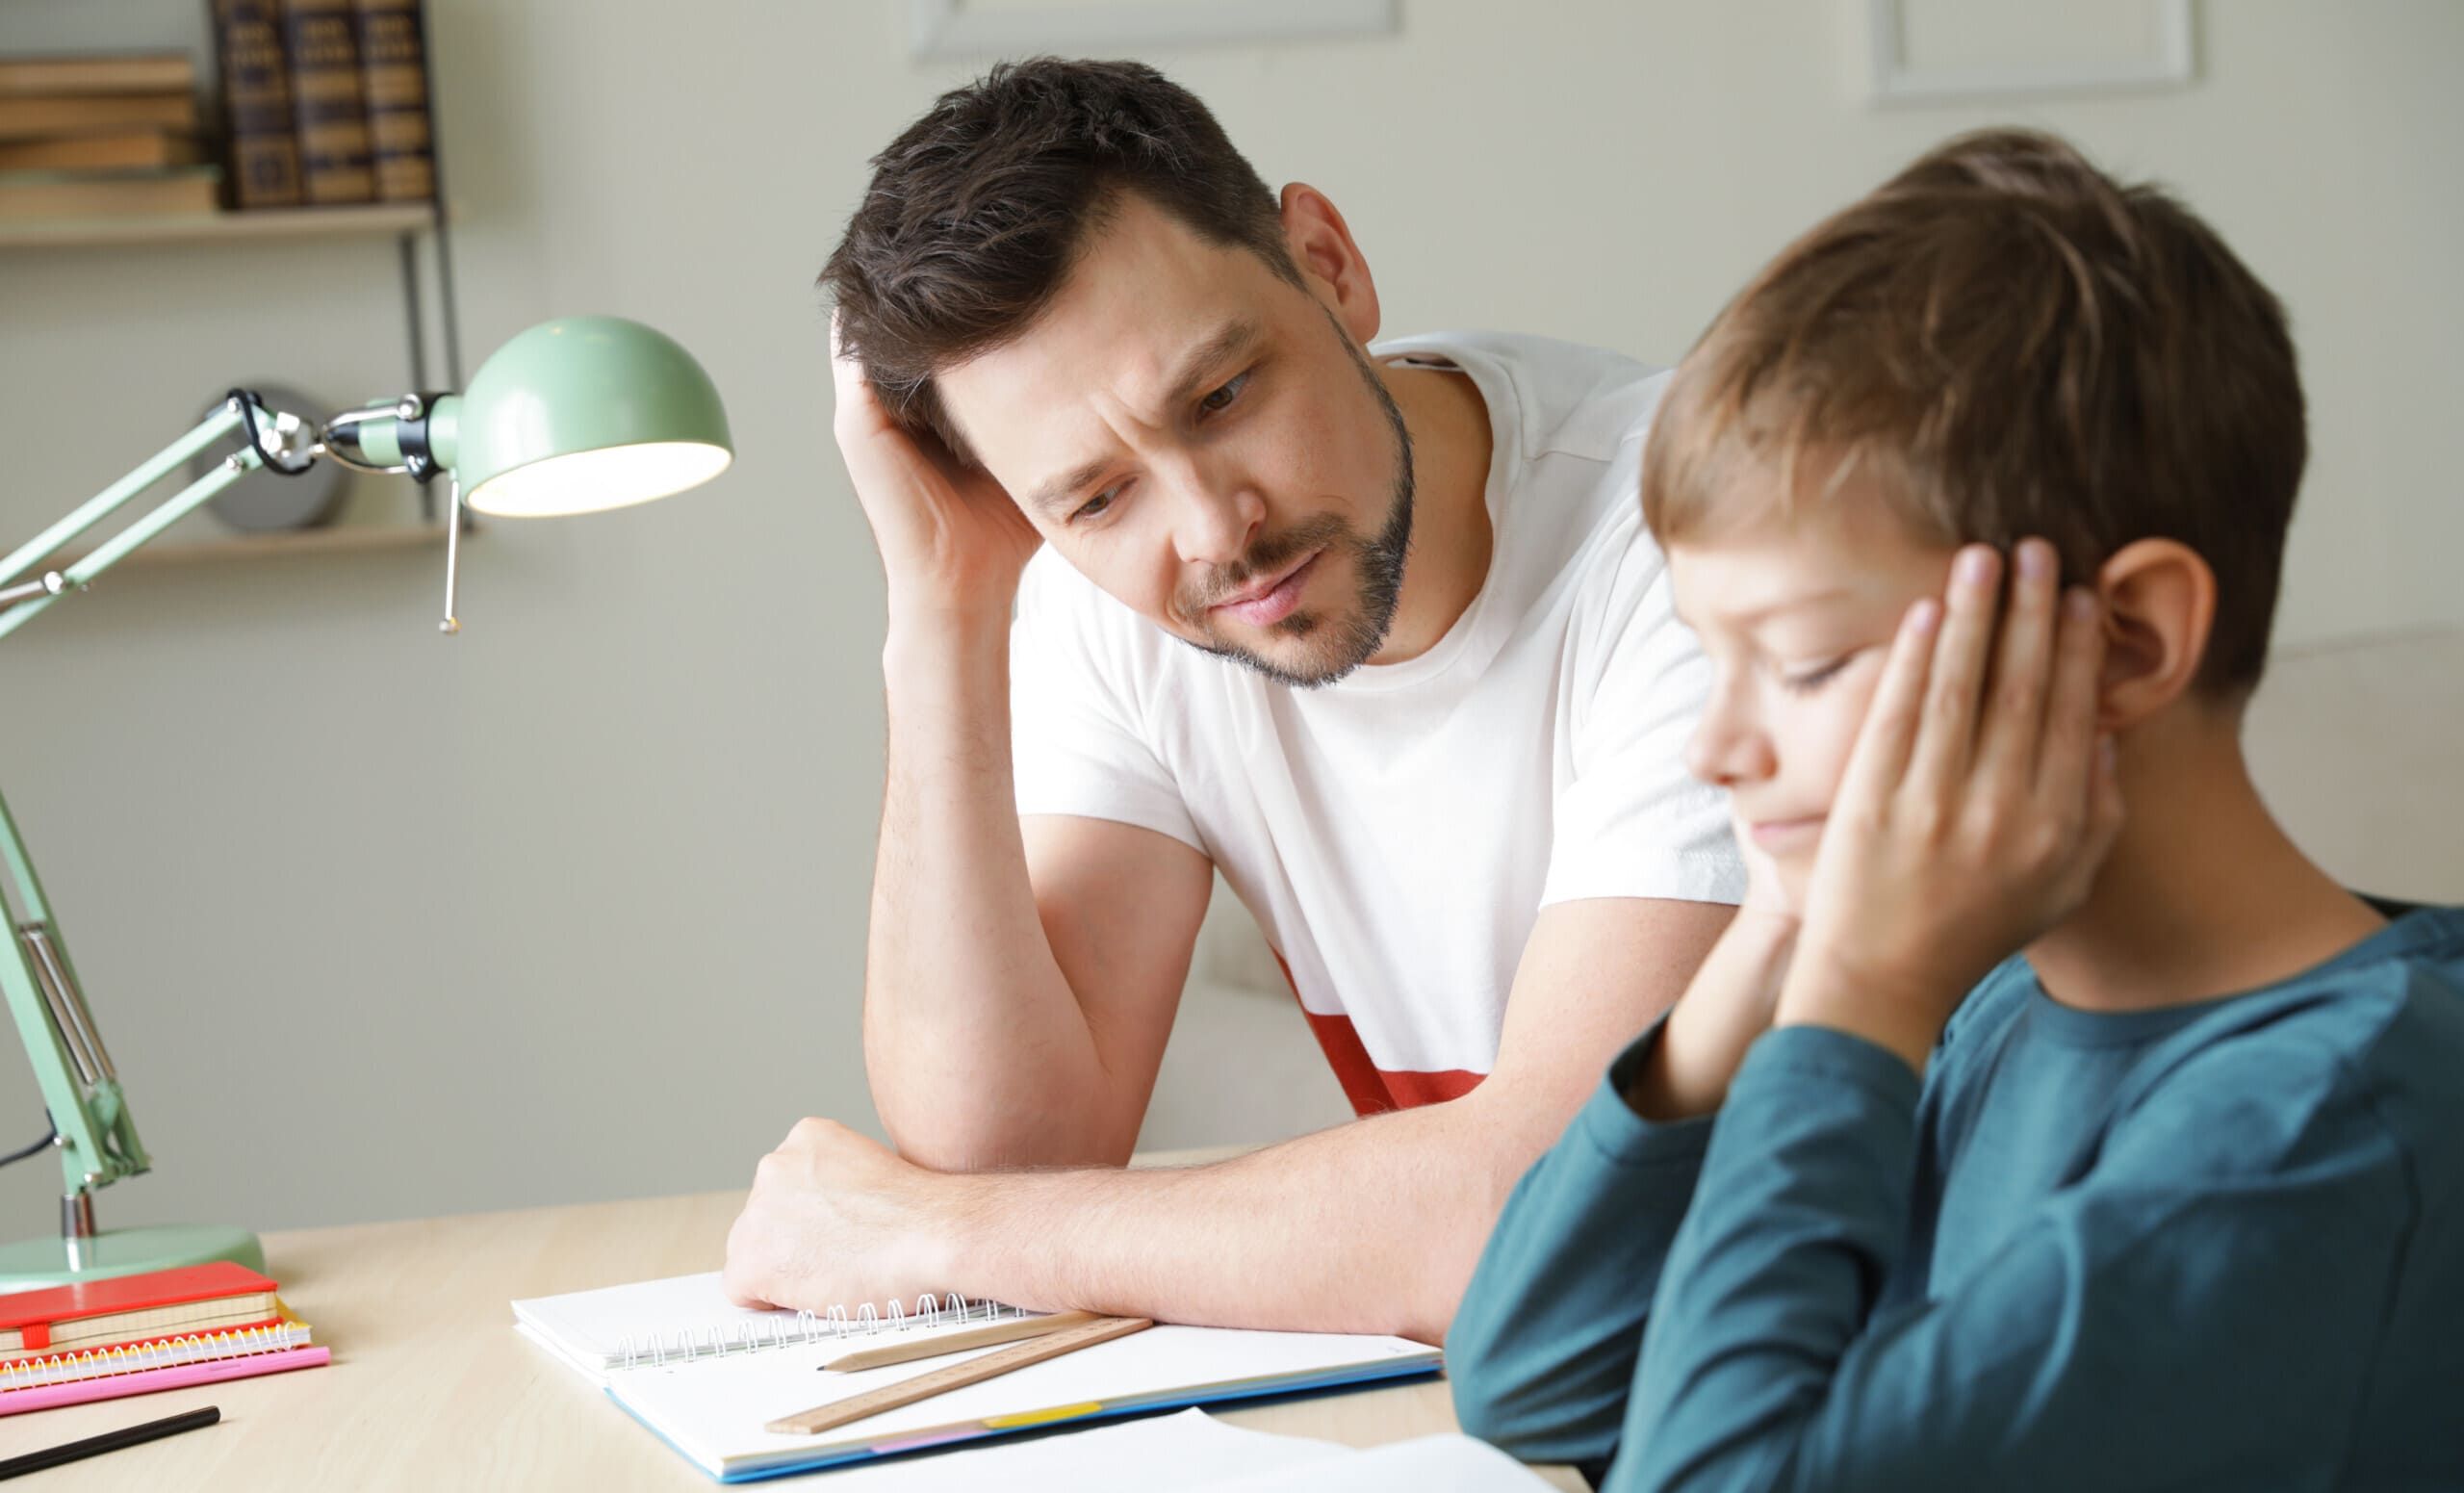 «نائبة»: لو الأب والأم مايعرفوش لغة إزاي هيساعدوا الطفل في كتابة «homework»